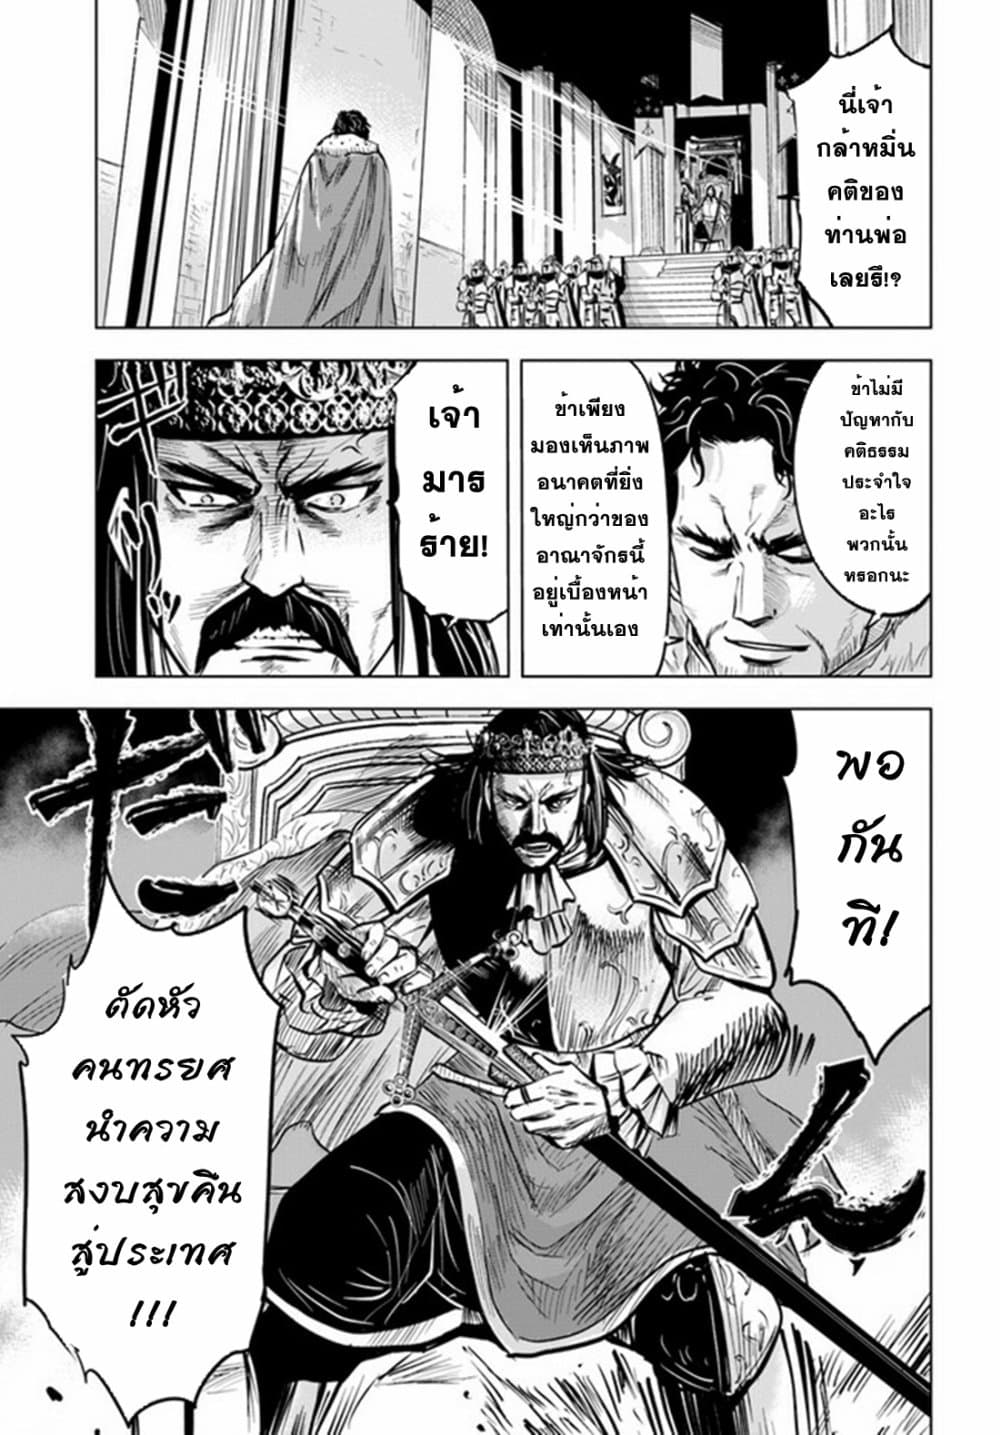 Oukoku e Tsuzuku Michi dorei Kenshi no Nariagari Eiyutan (Haaremu Raifu) - Road to the Kingdom Slave Swordsman the Rise of Heroes - Harem Life 29-29